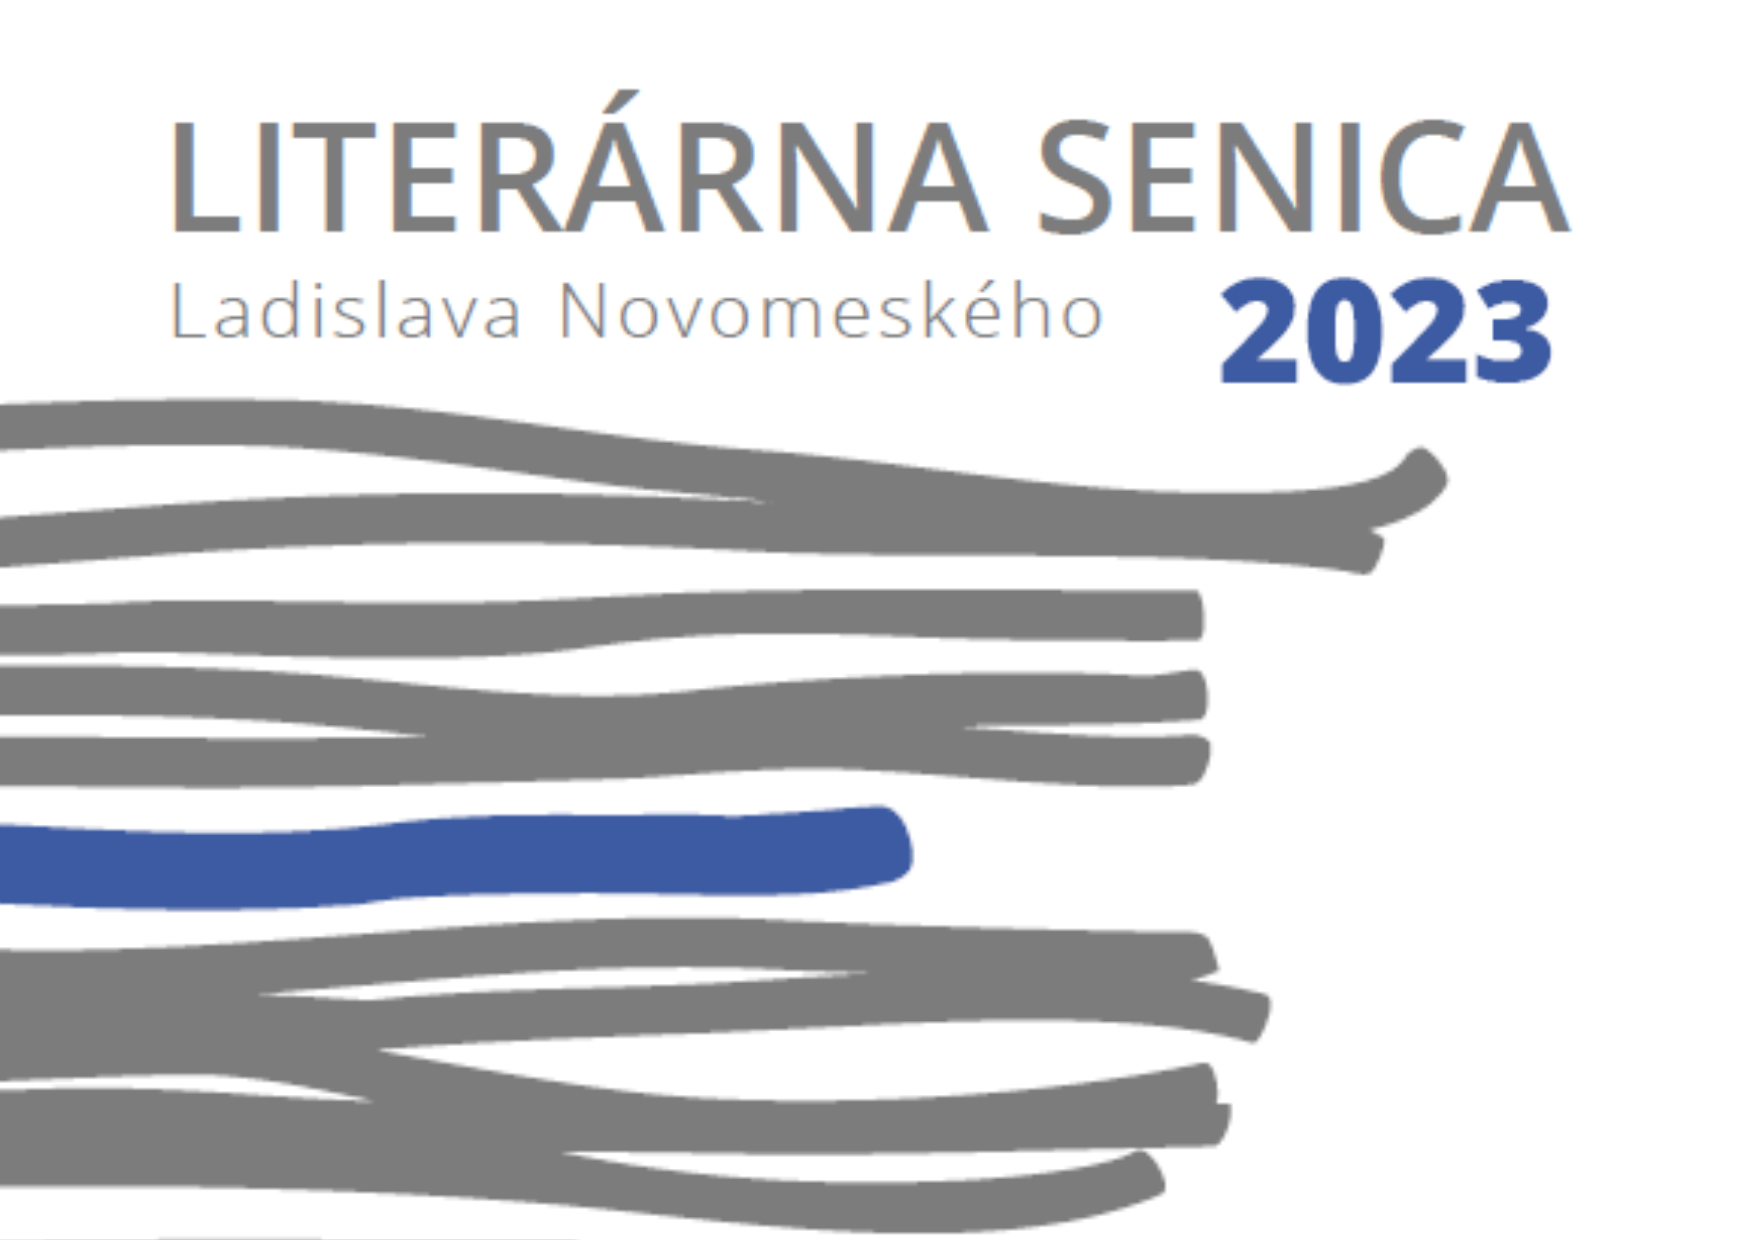 Uzávierka XXXVII. ročníka Literárnej Senice Ladislava Novomeského 2023 sa blíži!